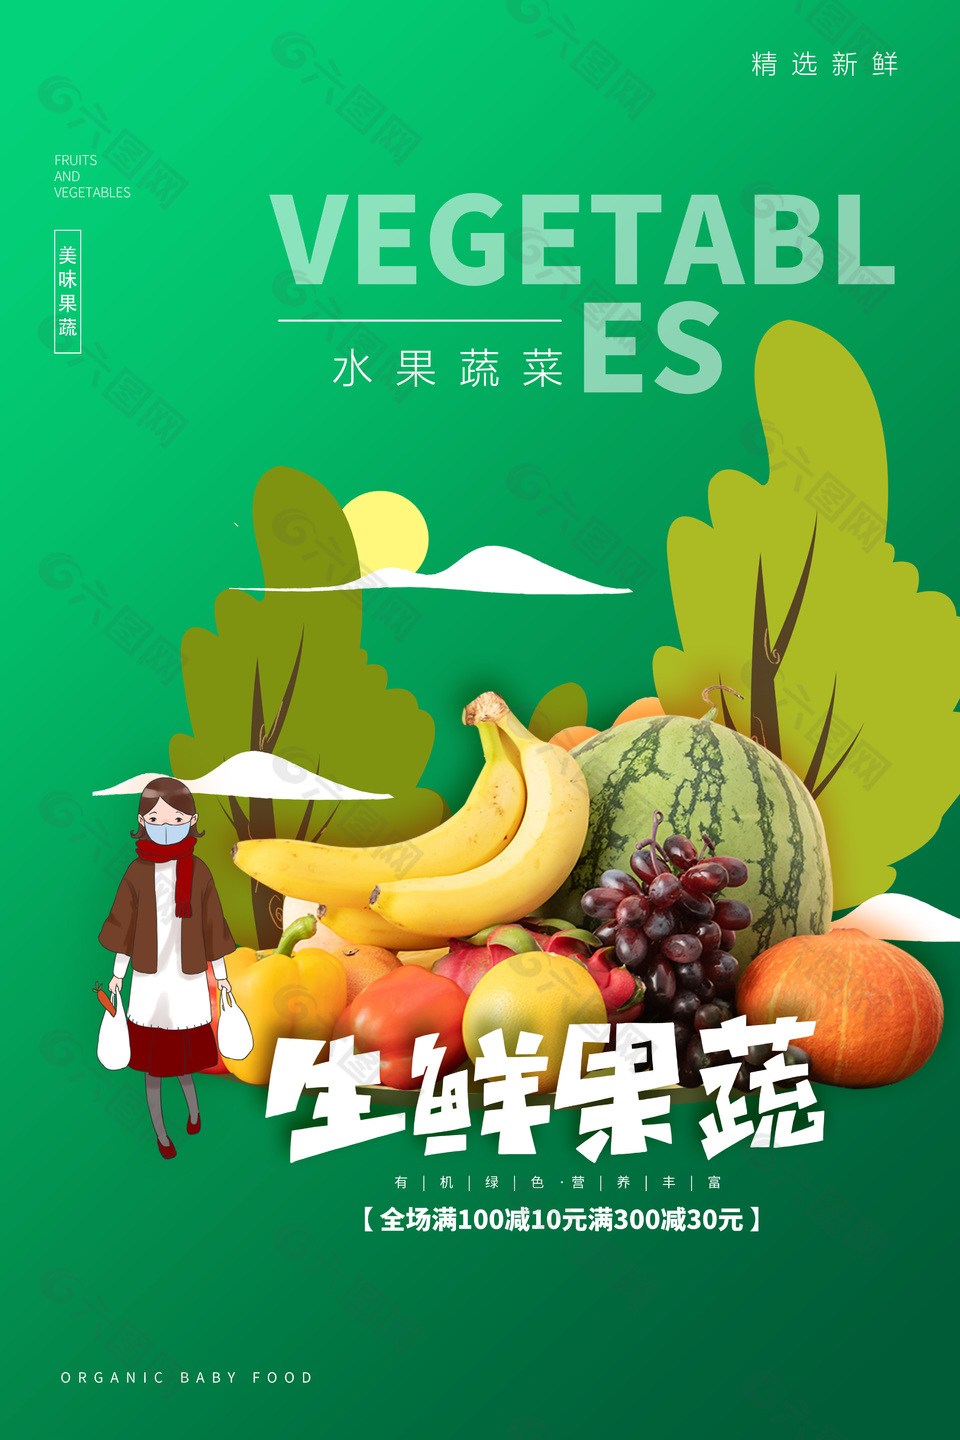 绿色主题生鲜果蔬创意素材下载